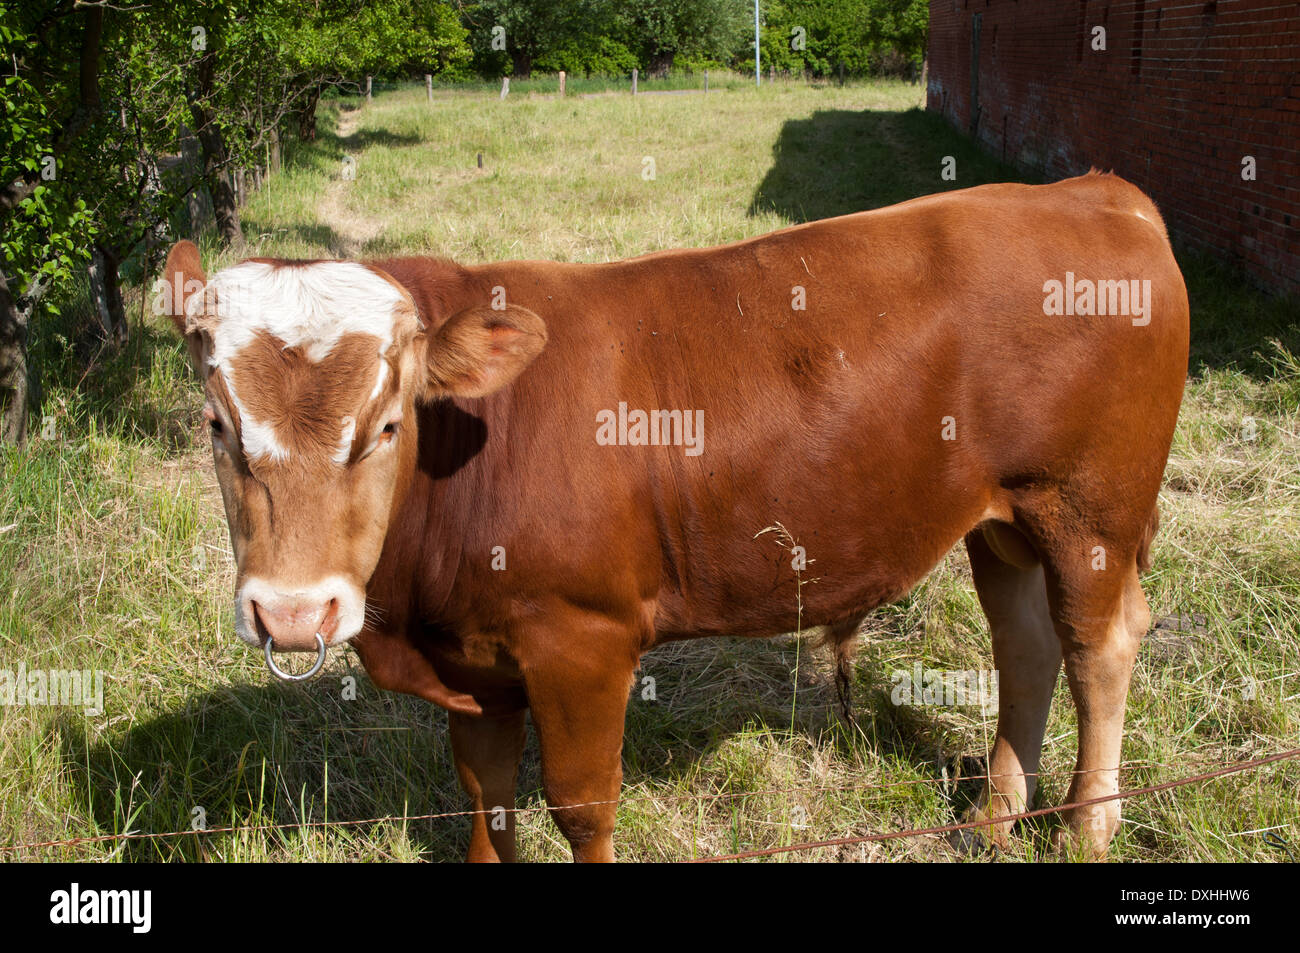 Young bull grazing in Ruehstaedt in Germany.  Ein junger Stier auf der Weide in Rühstädt in Sachsen-Anhalt. Stock Photo